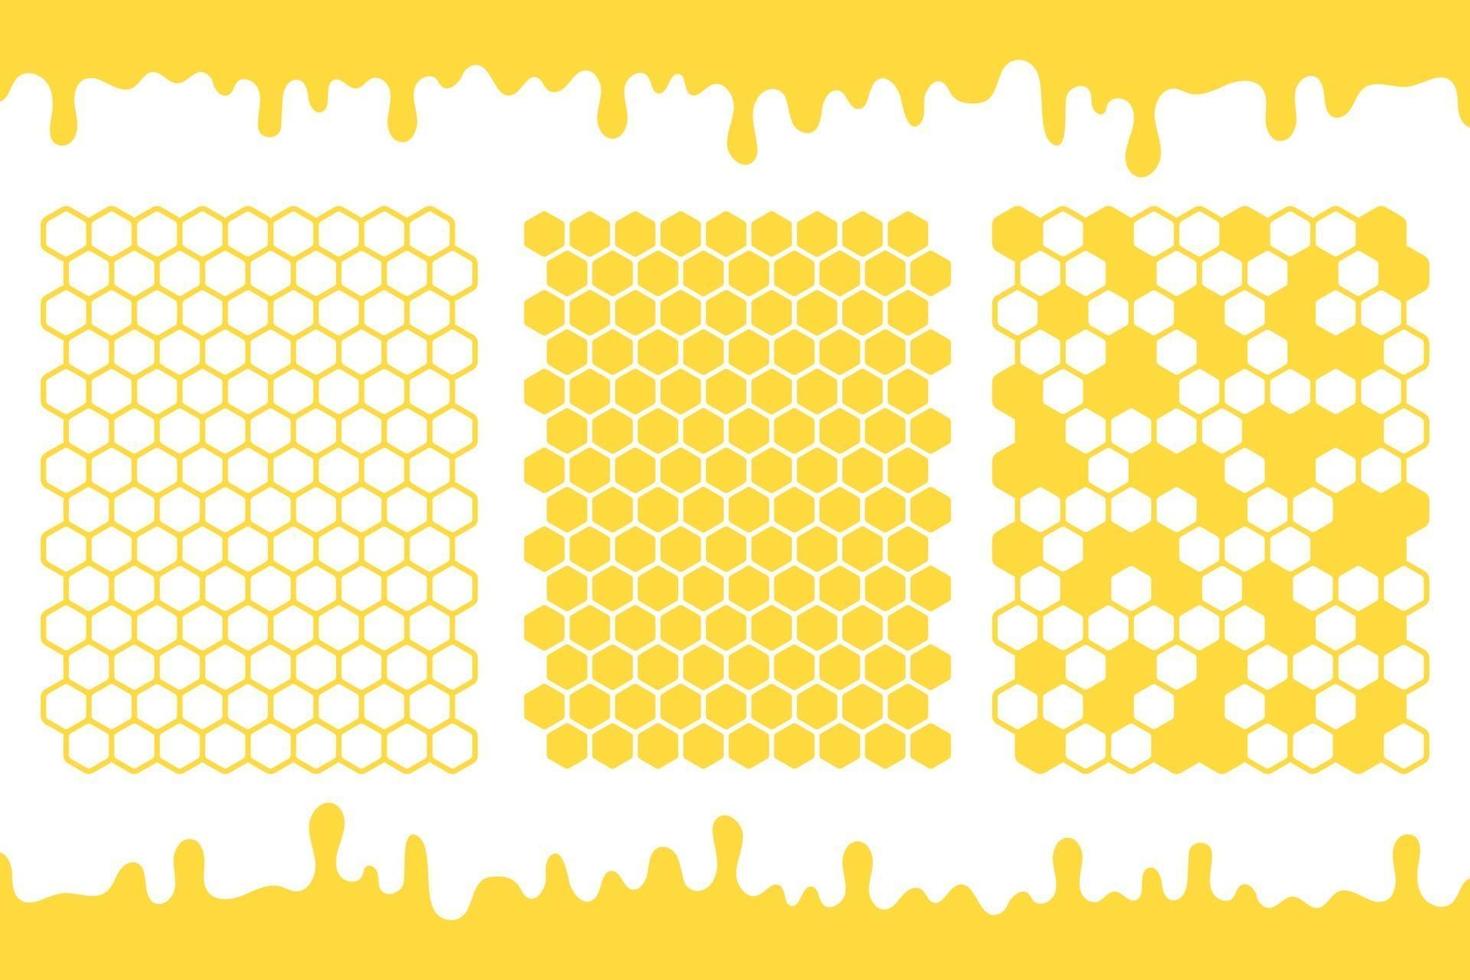 gul sexkantig bikakegallerivektor med honung som droppar på marken vektor